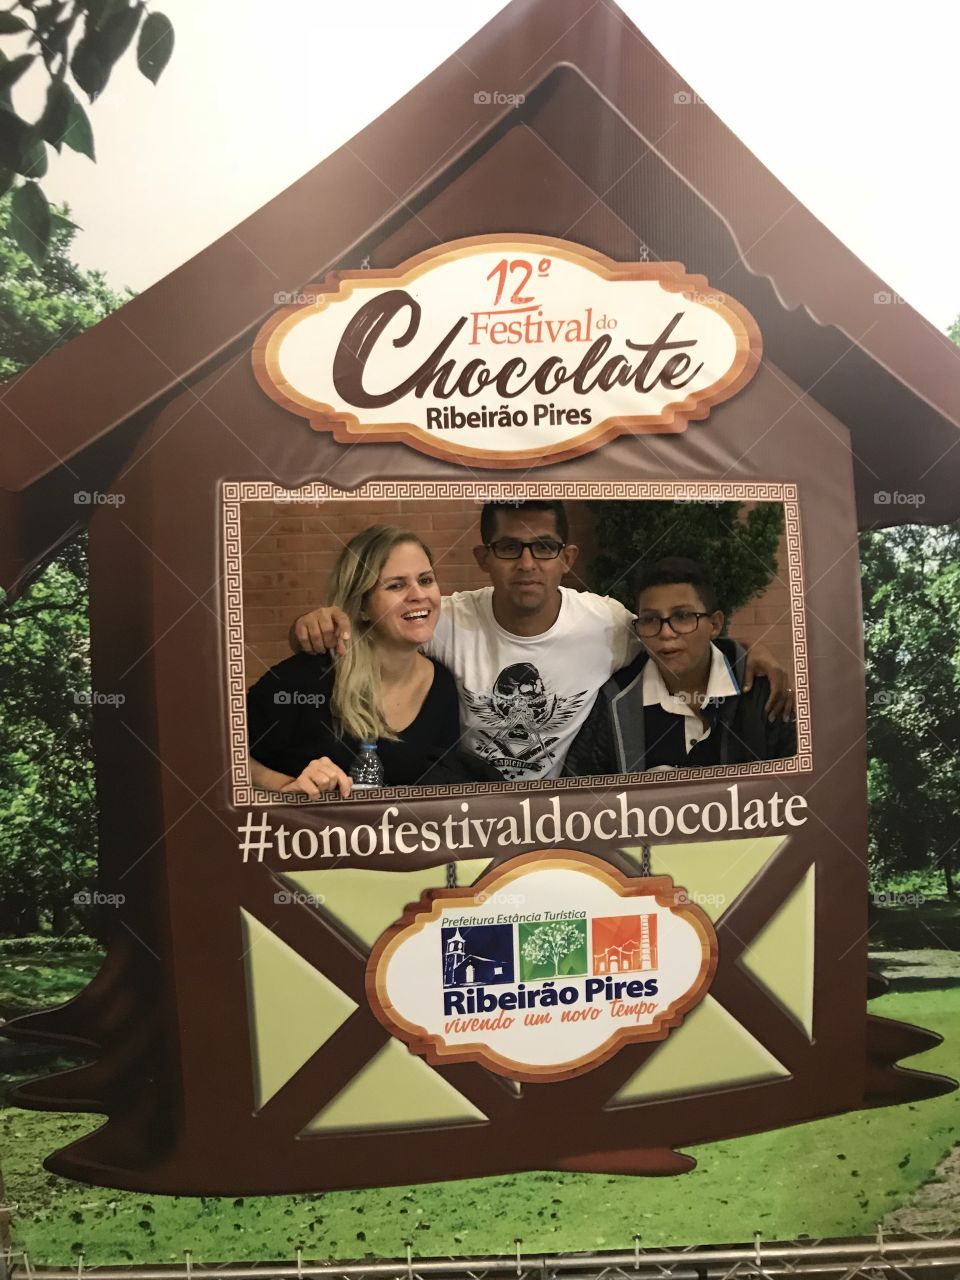 Festival do Chocolate. Ribeirão Pires SP